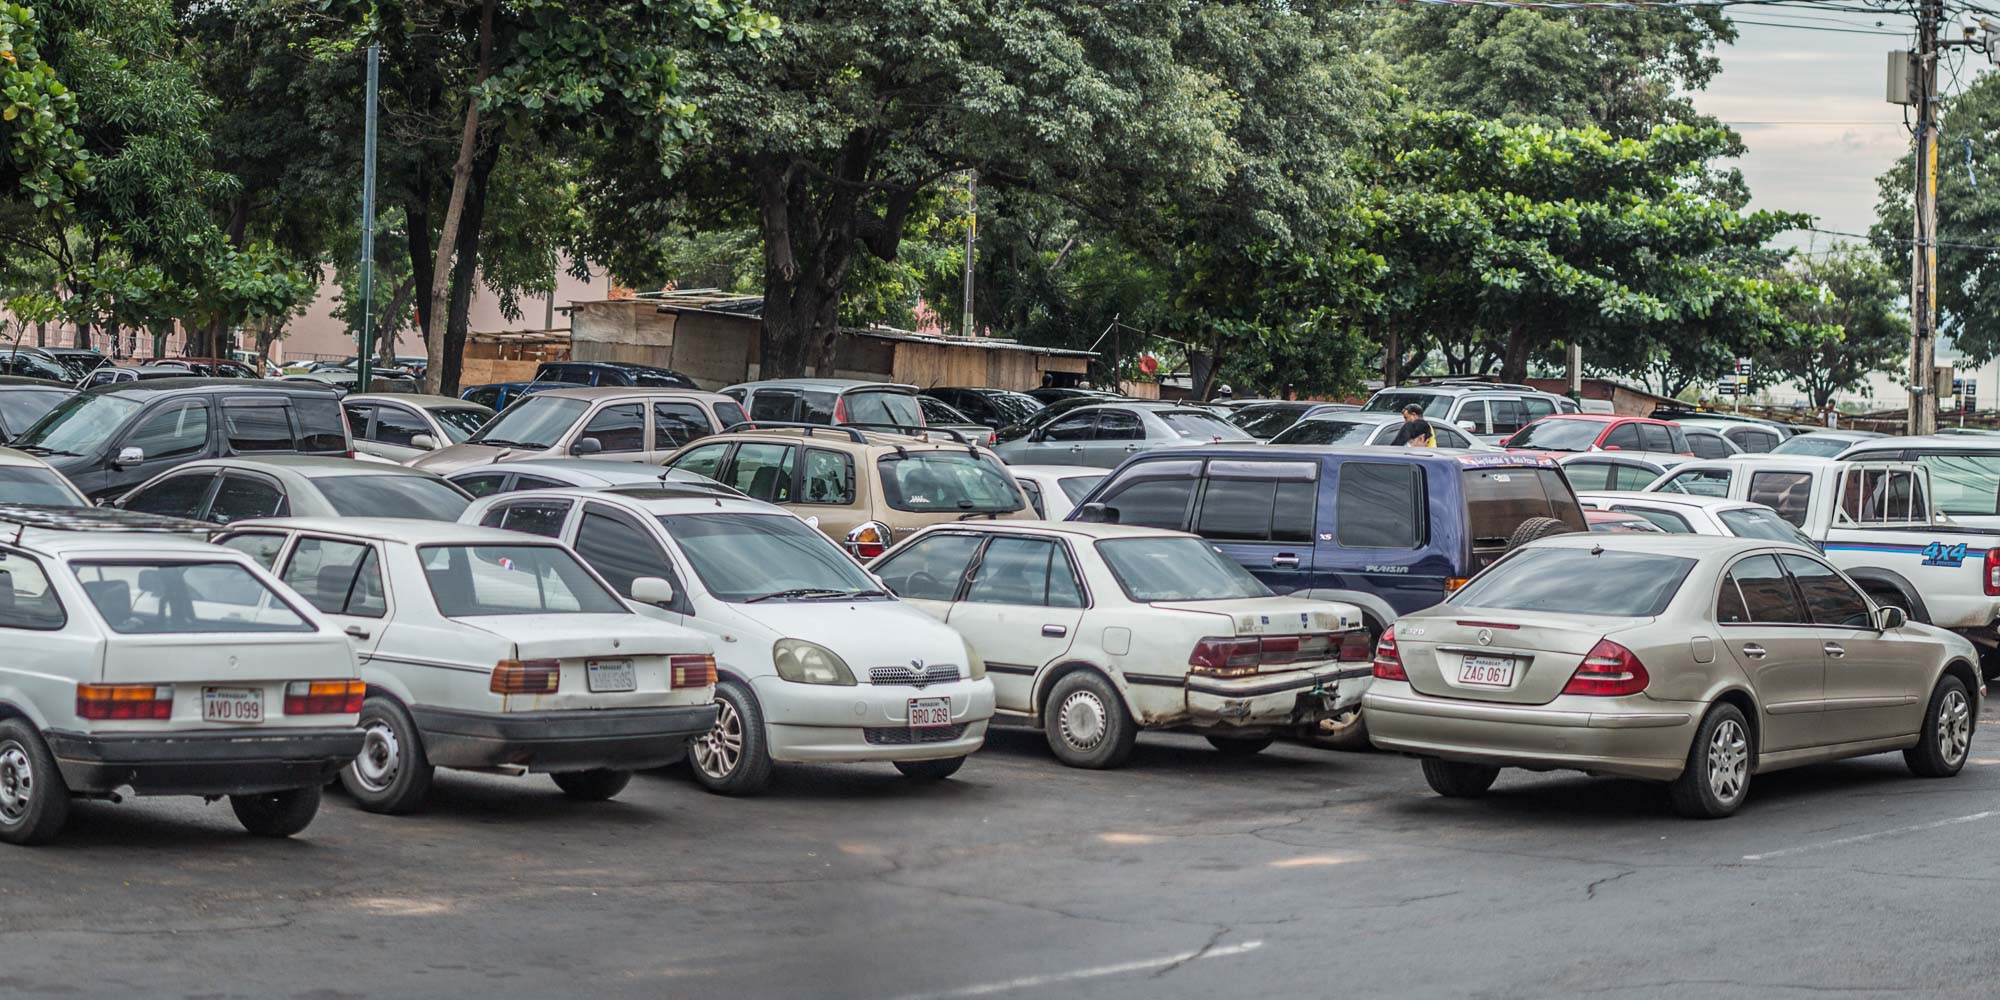 Comuna capitalina podría rescindir contrato con empresa de estacionamiento tarifado